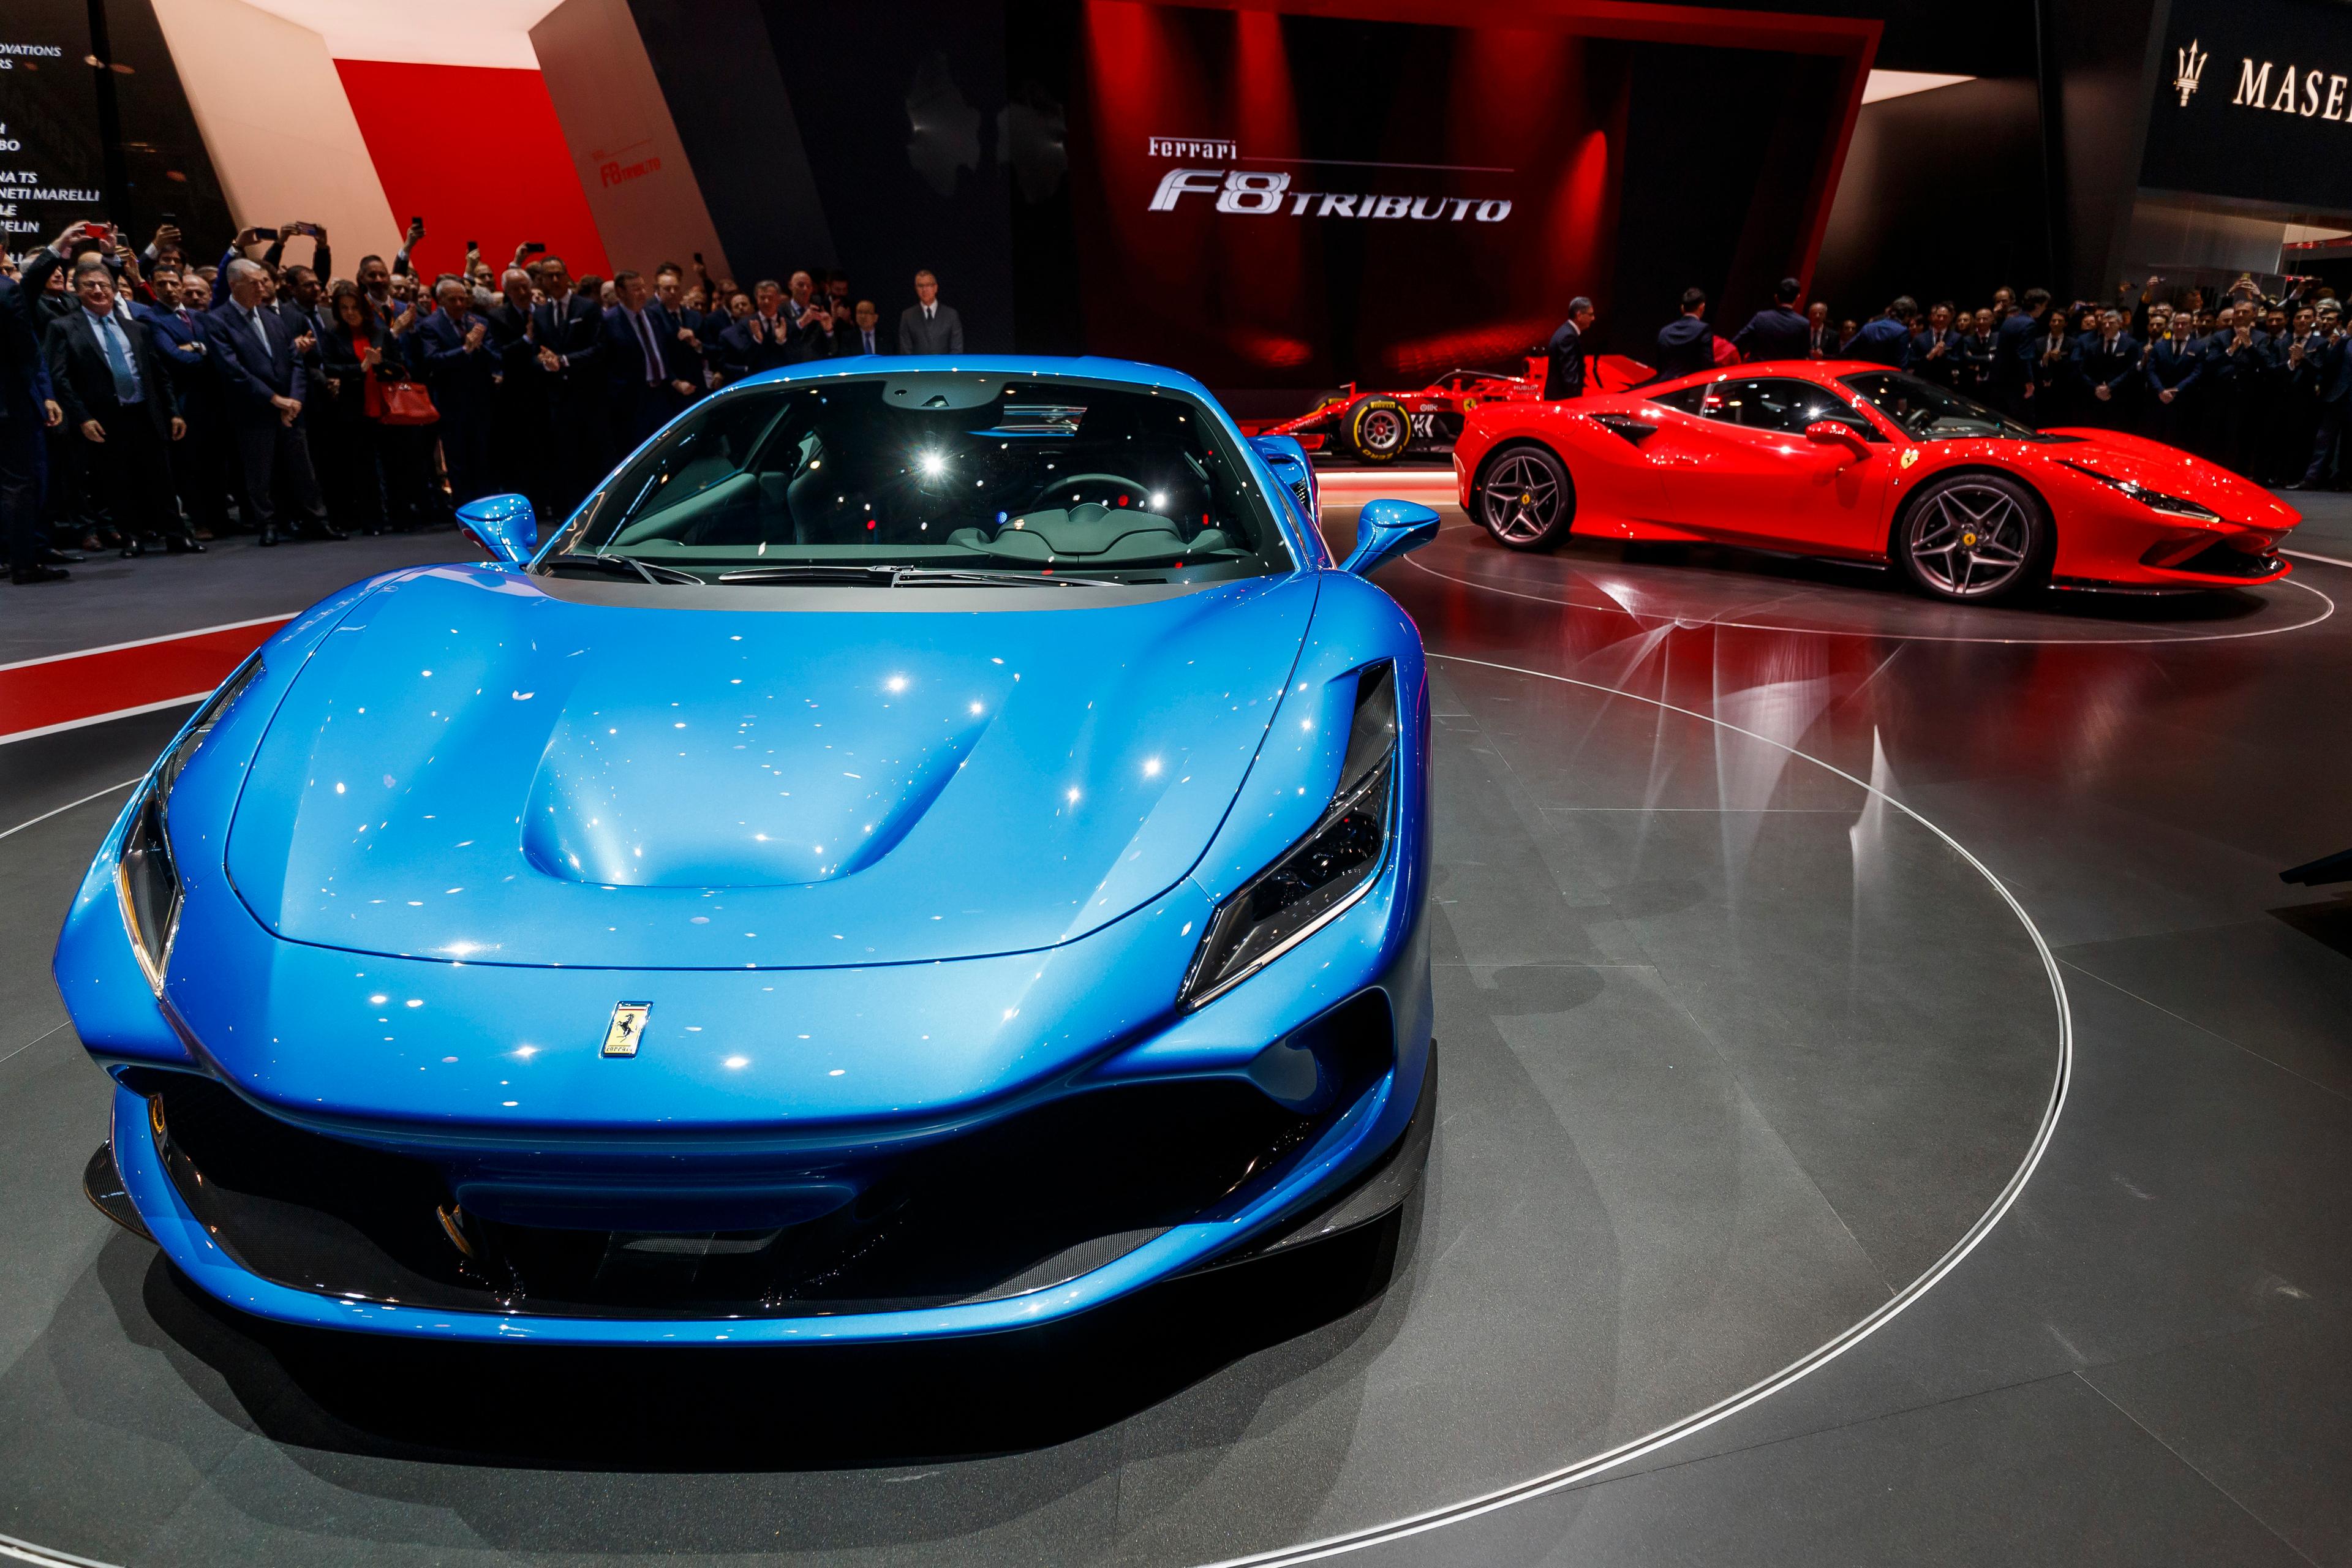 Ferrari ska nu tillåta kryptobetalningar även på den europeiska marknaden efter att tidigare accepterat detta för amerikanska kunder. Arkivbild. Foto: Cyril Zingaro/AP/TT